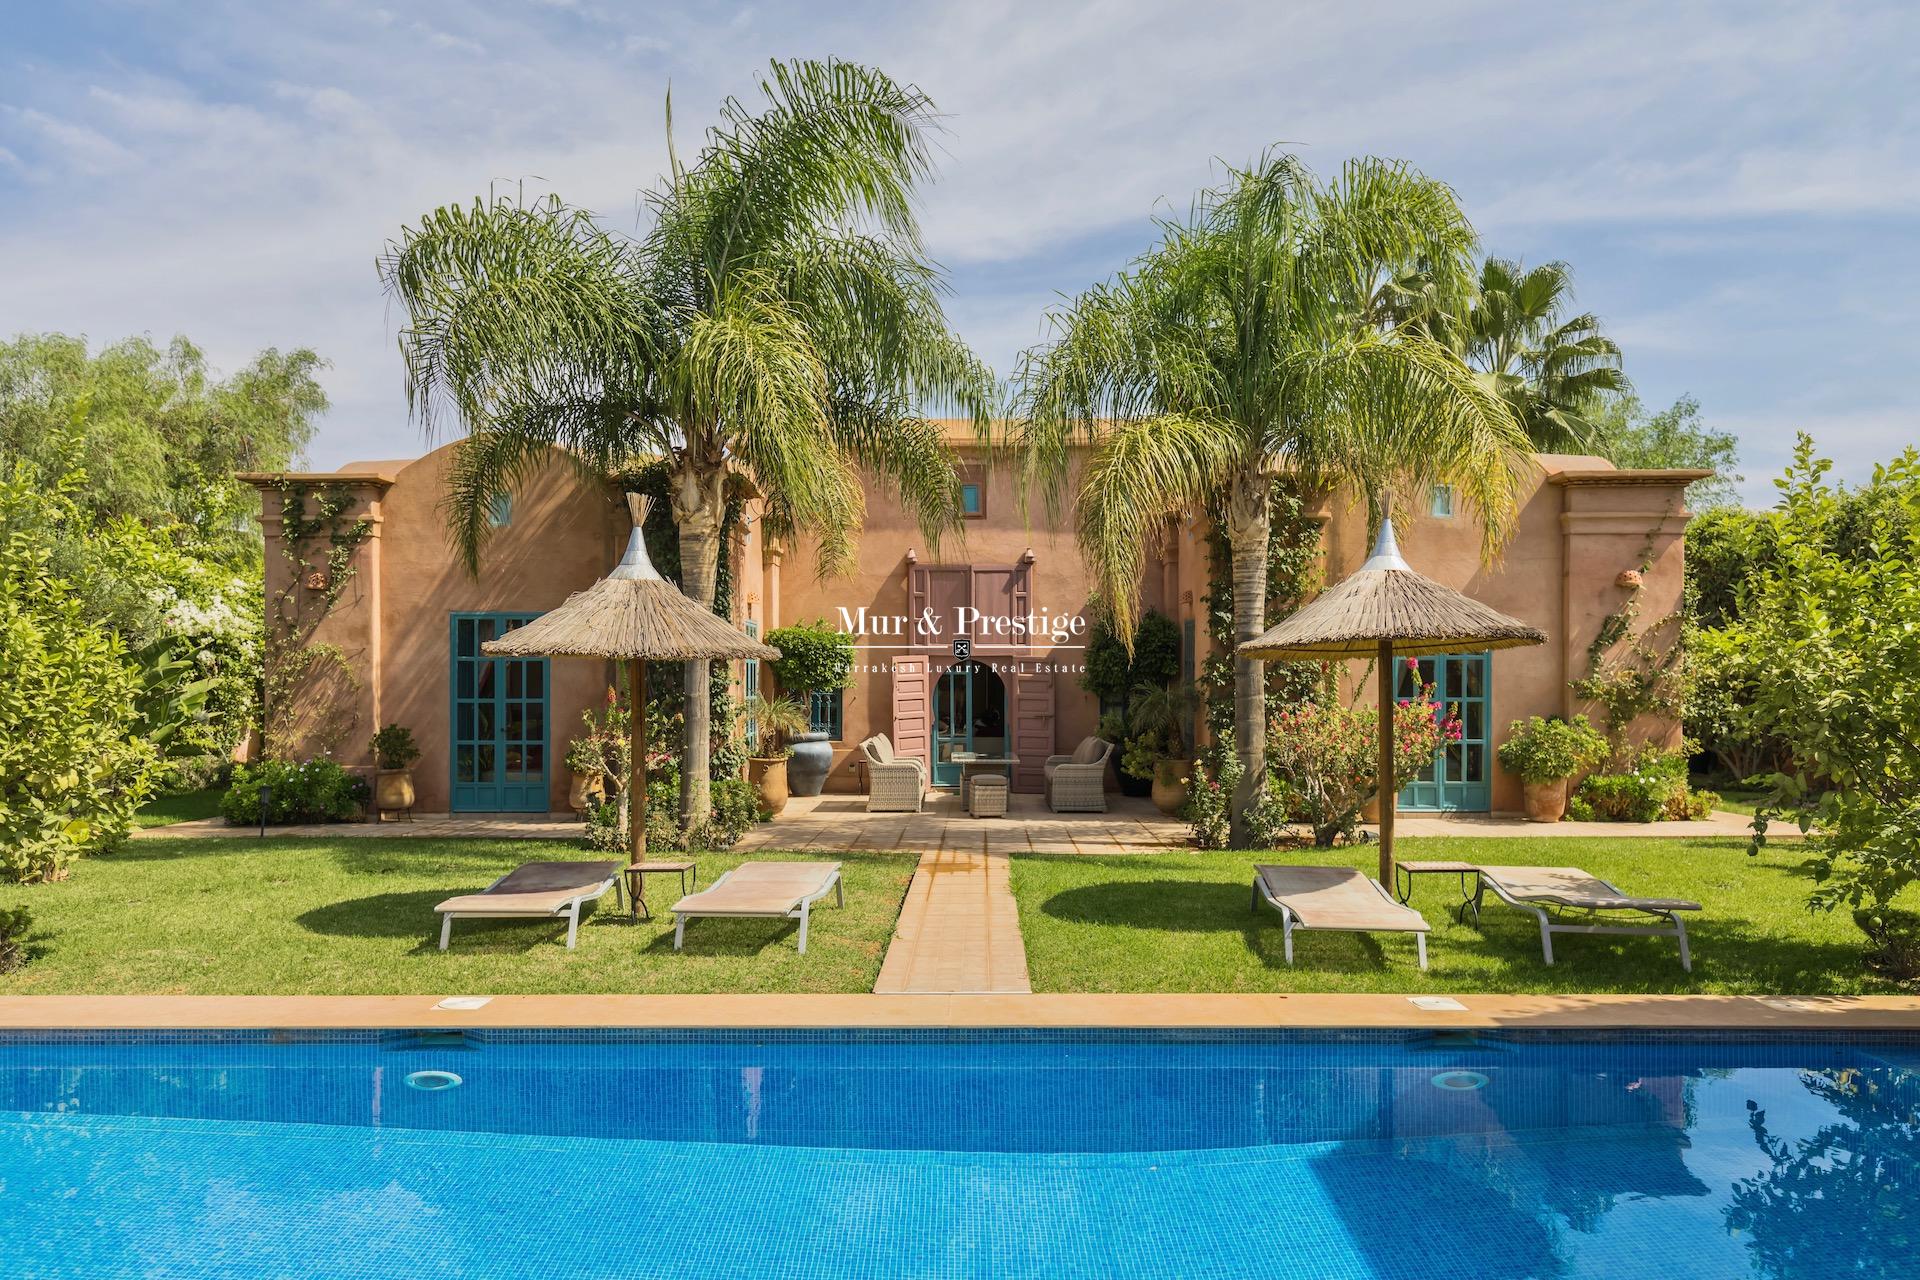 Villa en vente à Marrakech réalisée par l’architecte Charles Boccara  